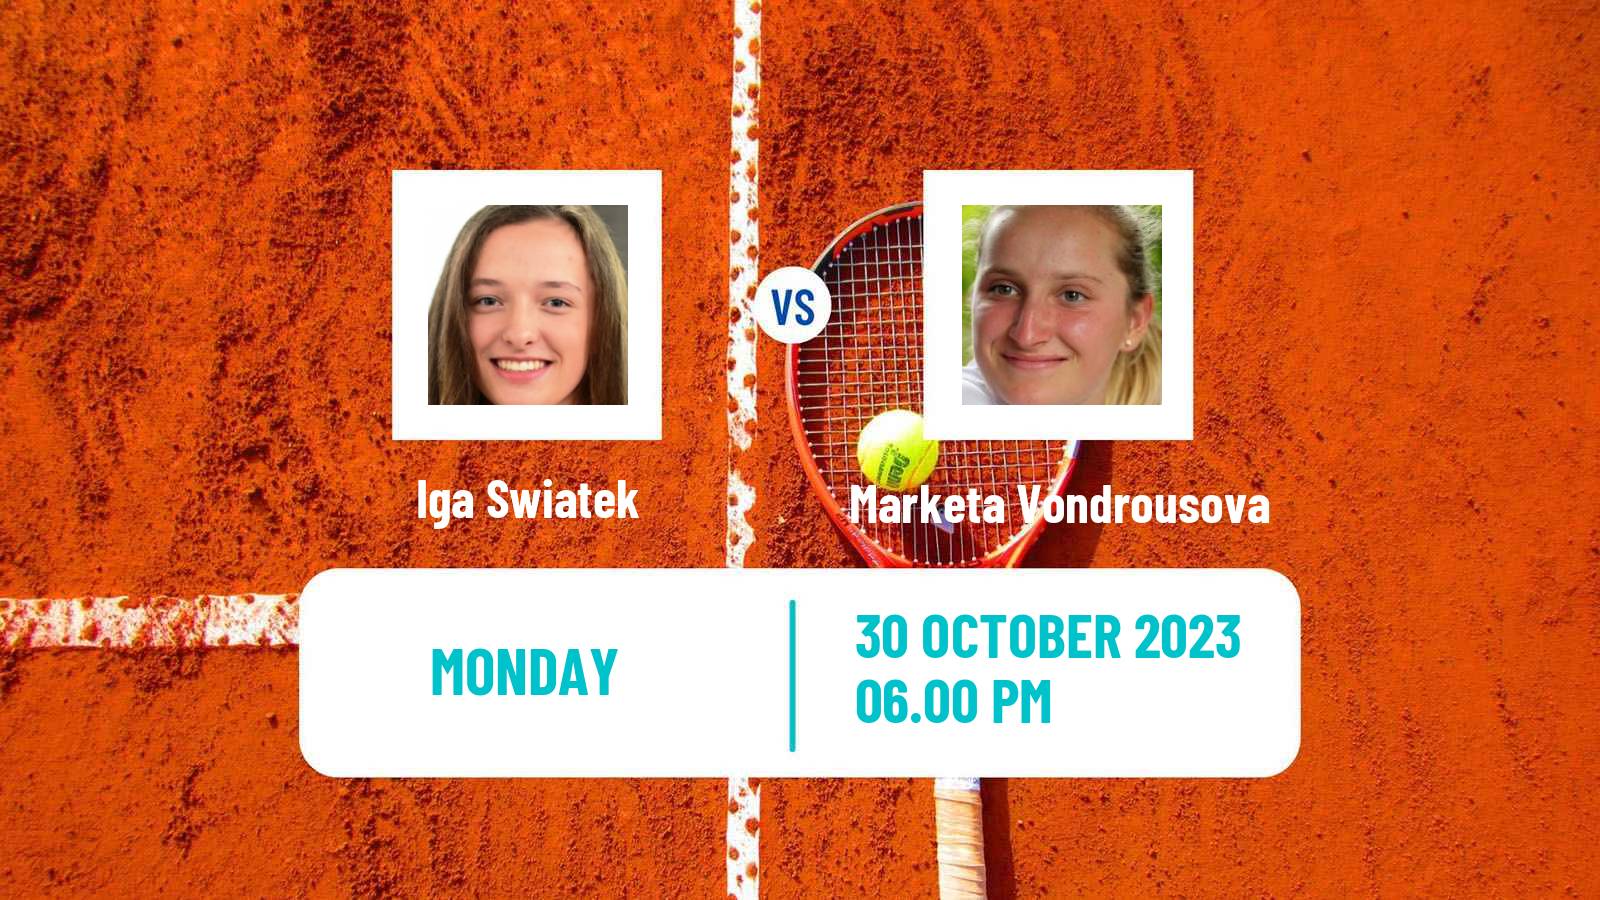 Tennis WTA Finals Iga Swiatek - Marketa Vondrousova